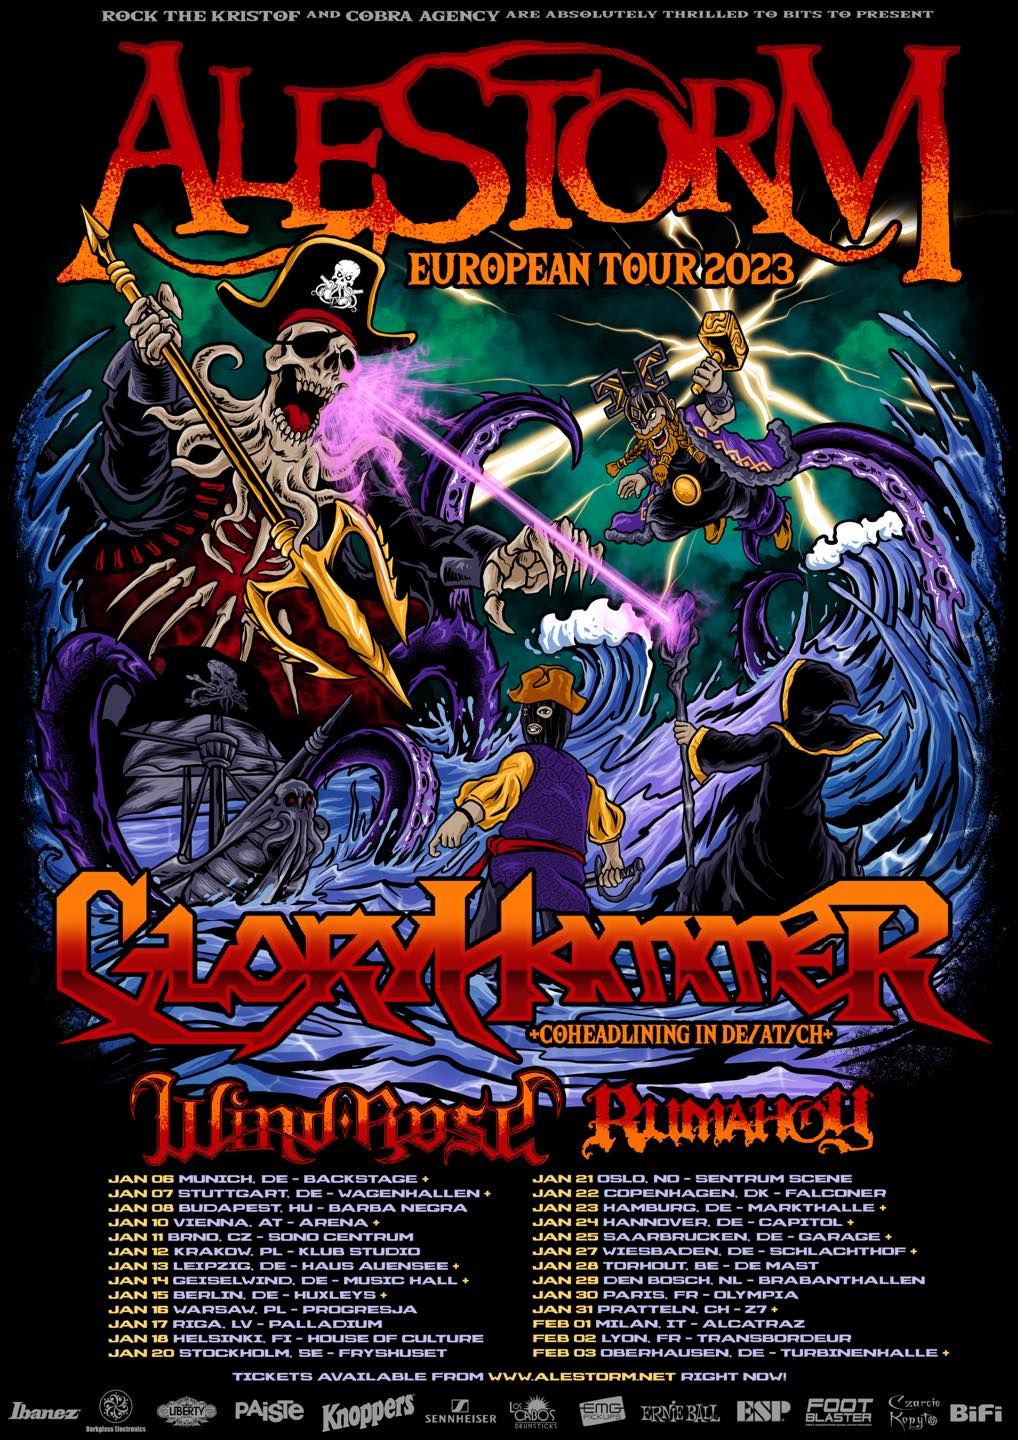 Europatour mit Gloryhammer, Wind Rose und Rumahoy angekündigt